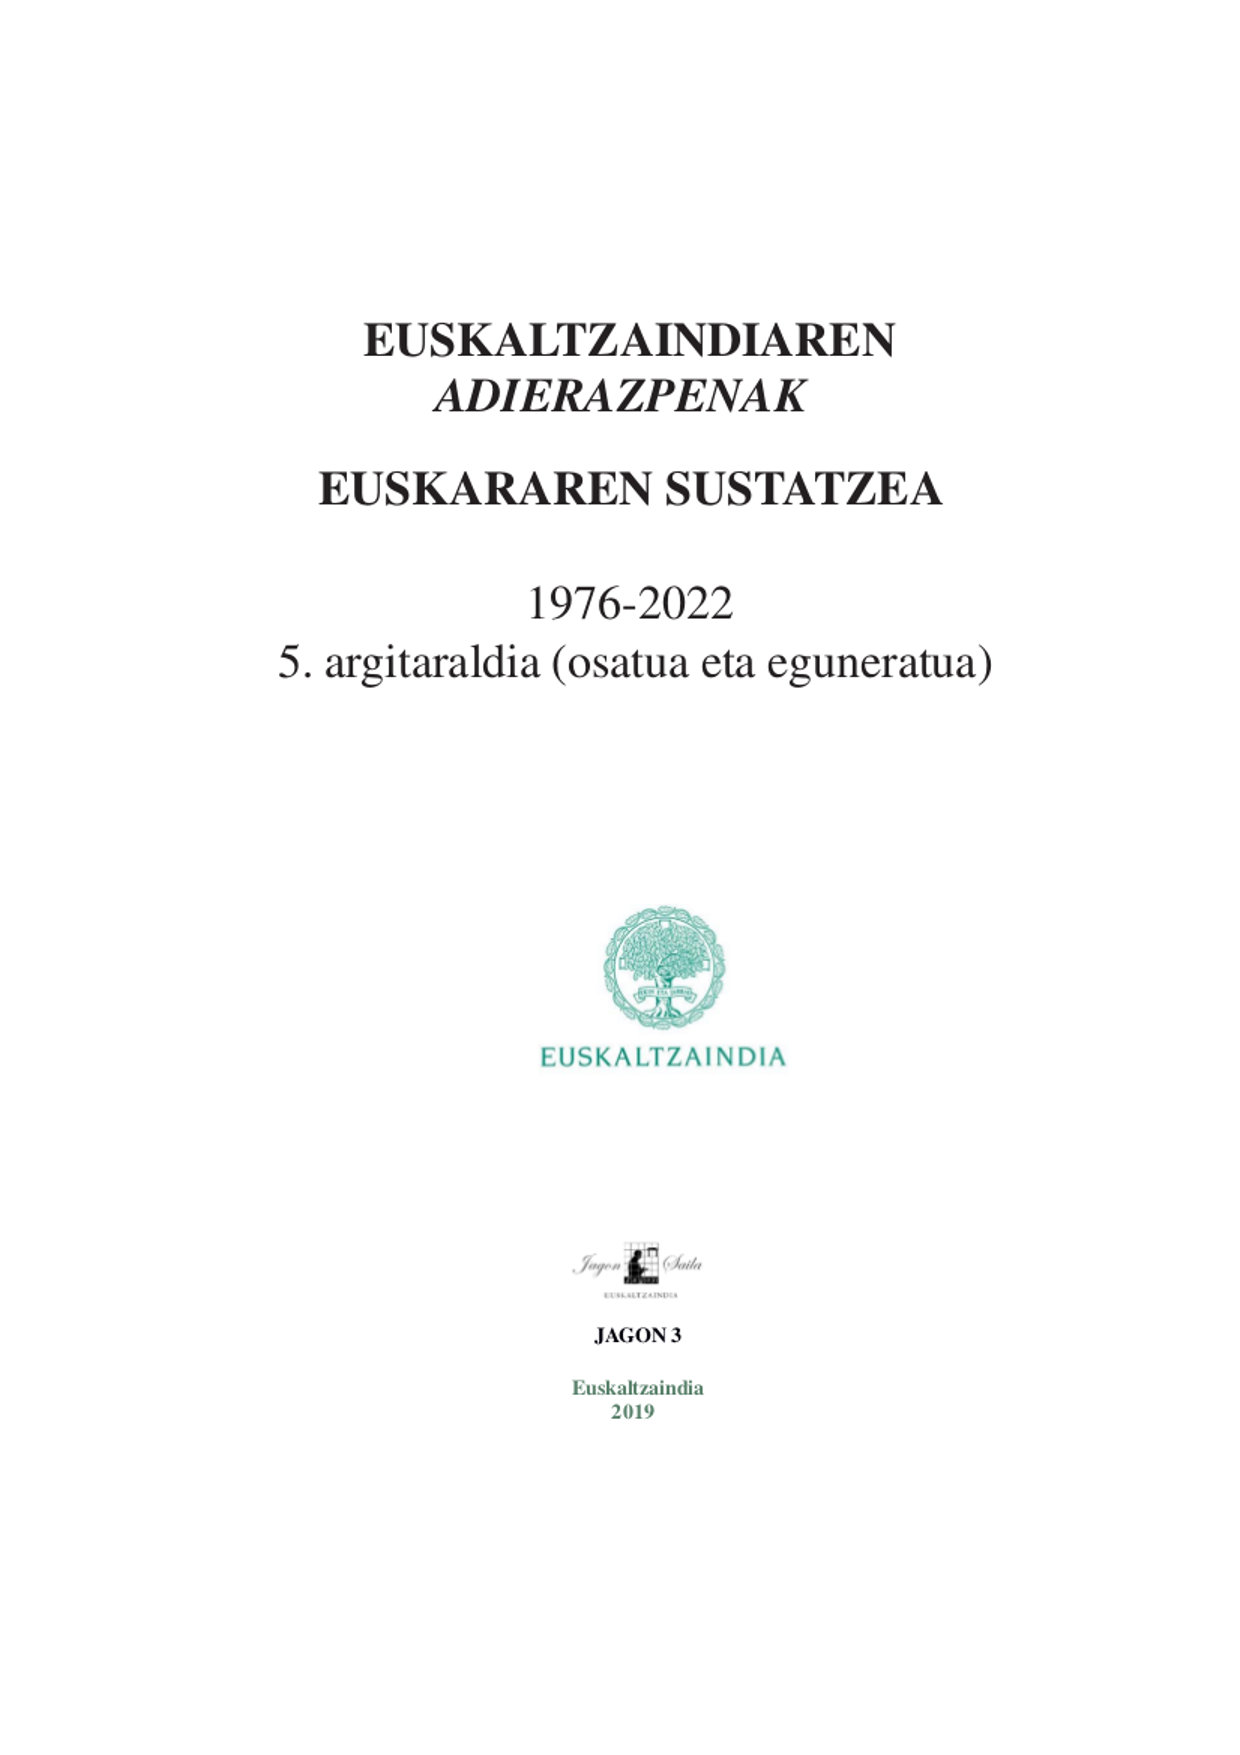 Euskaltzaindiaren adierazpenak (1976-2021)